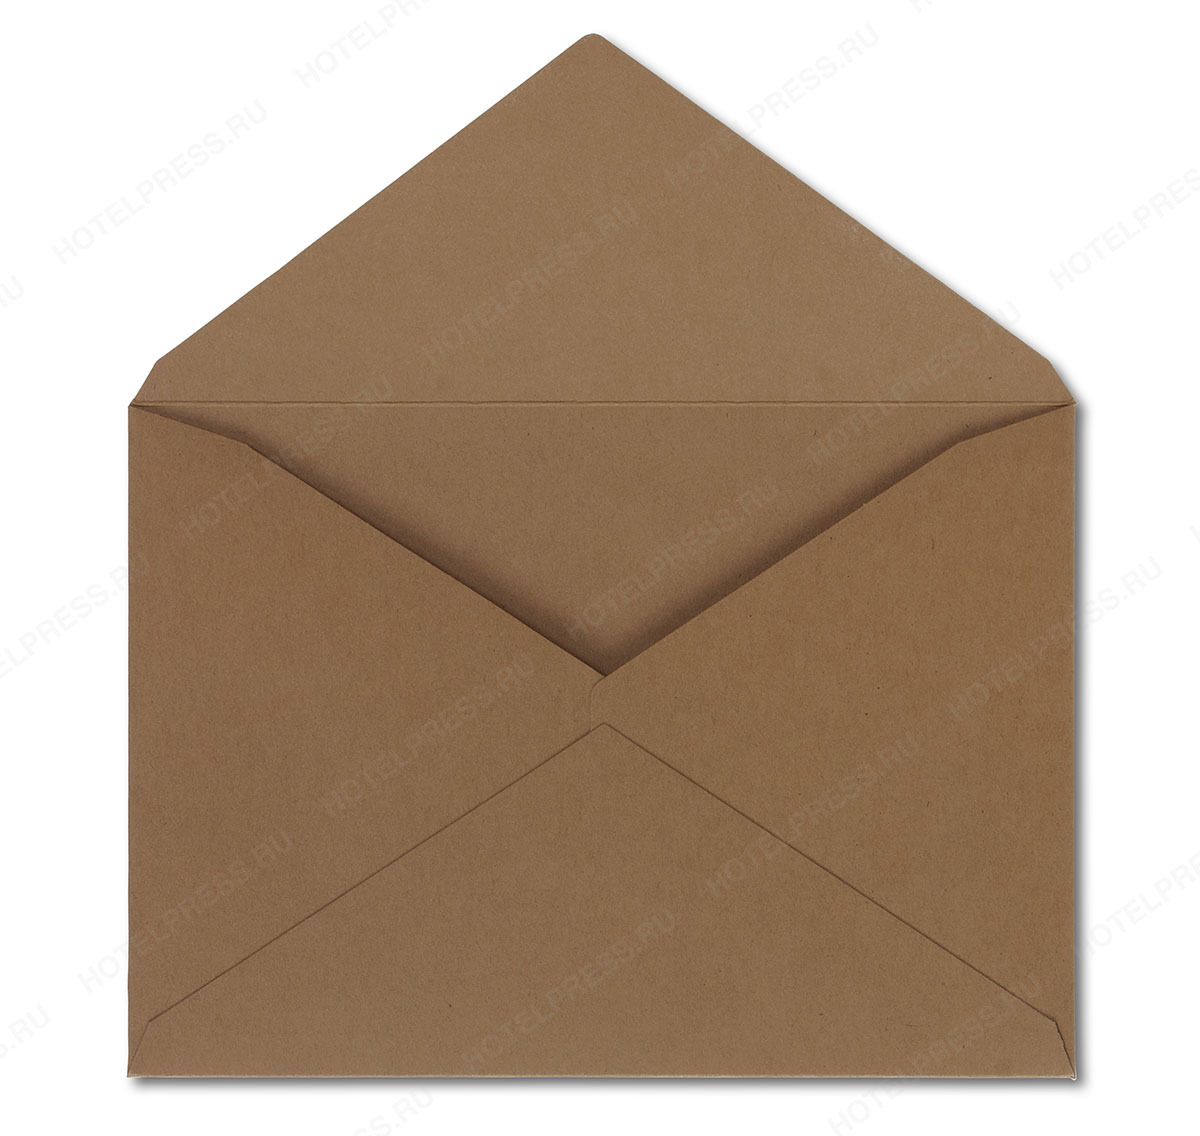 Крафтовый конверт с треугольным клапаном компании ELASTIC